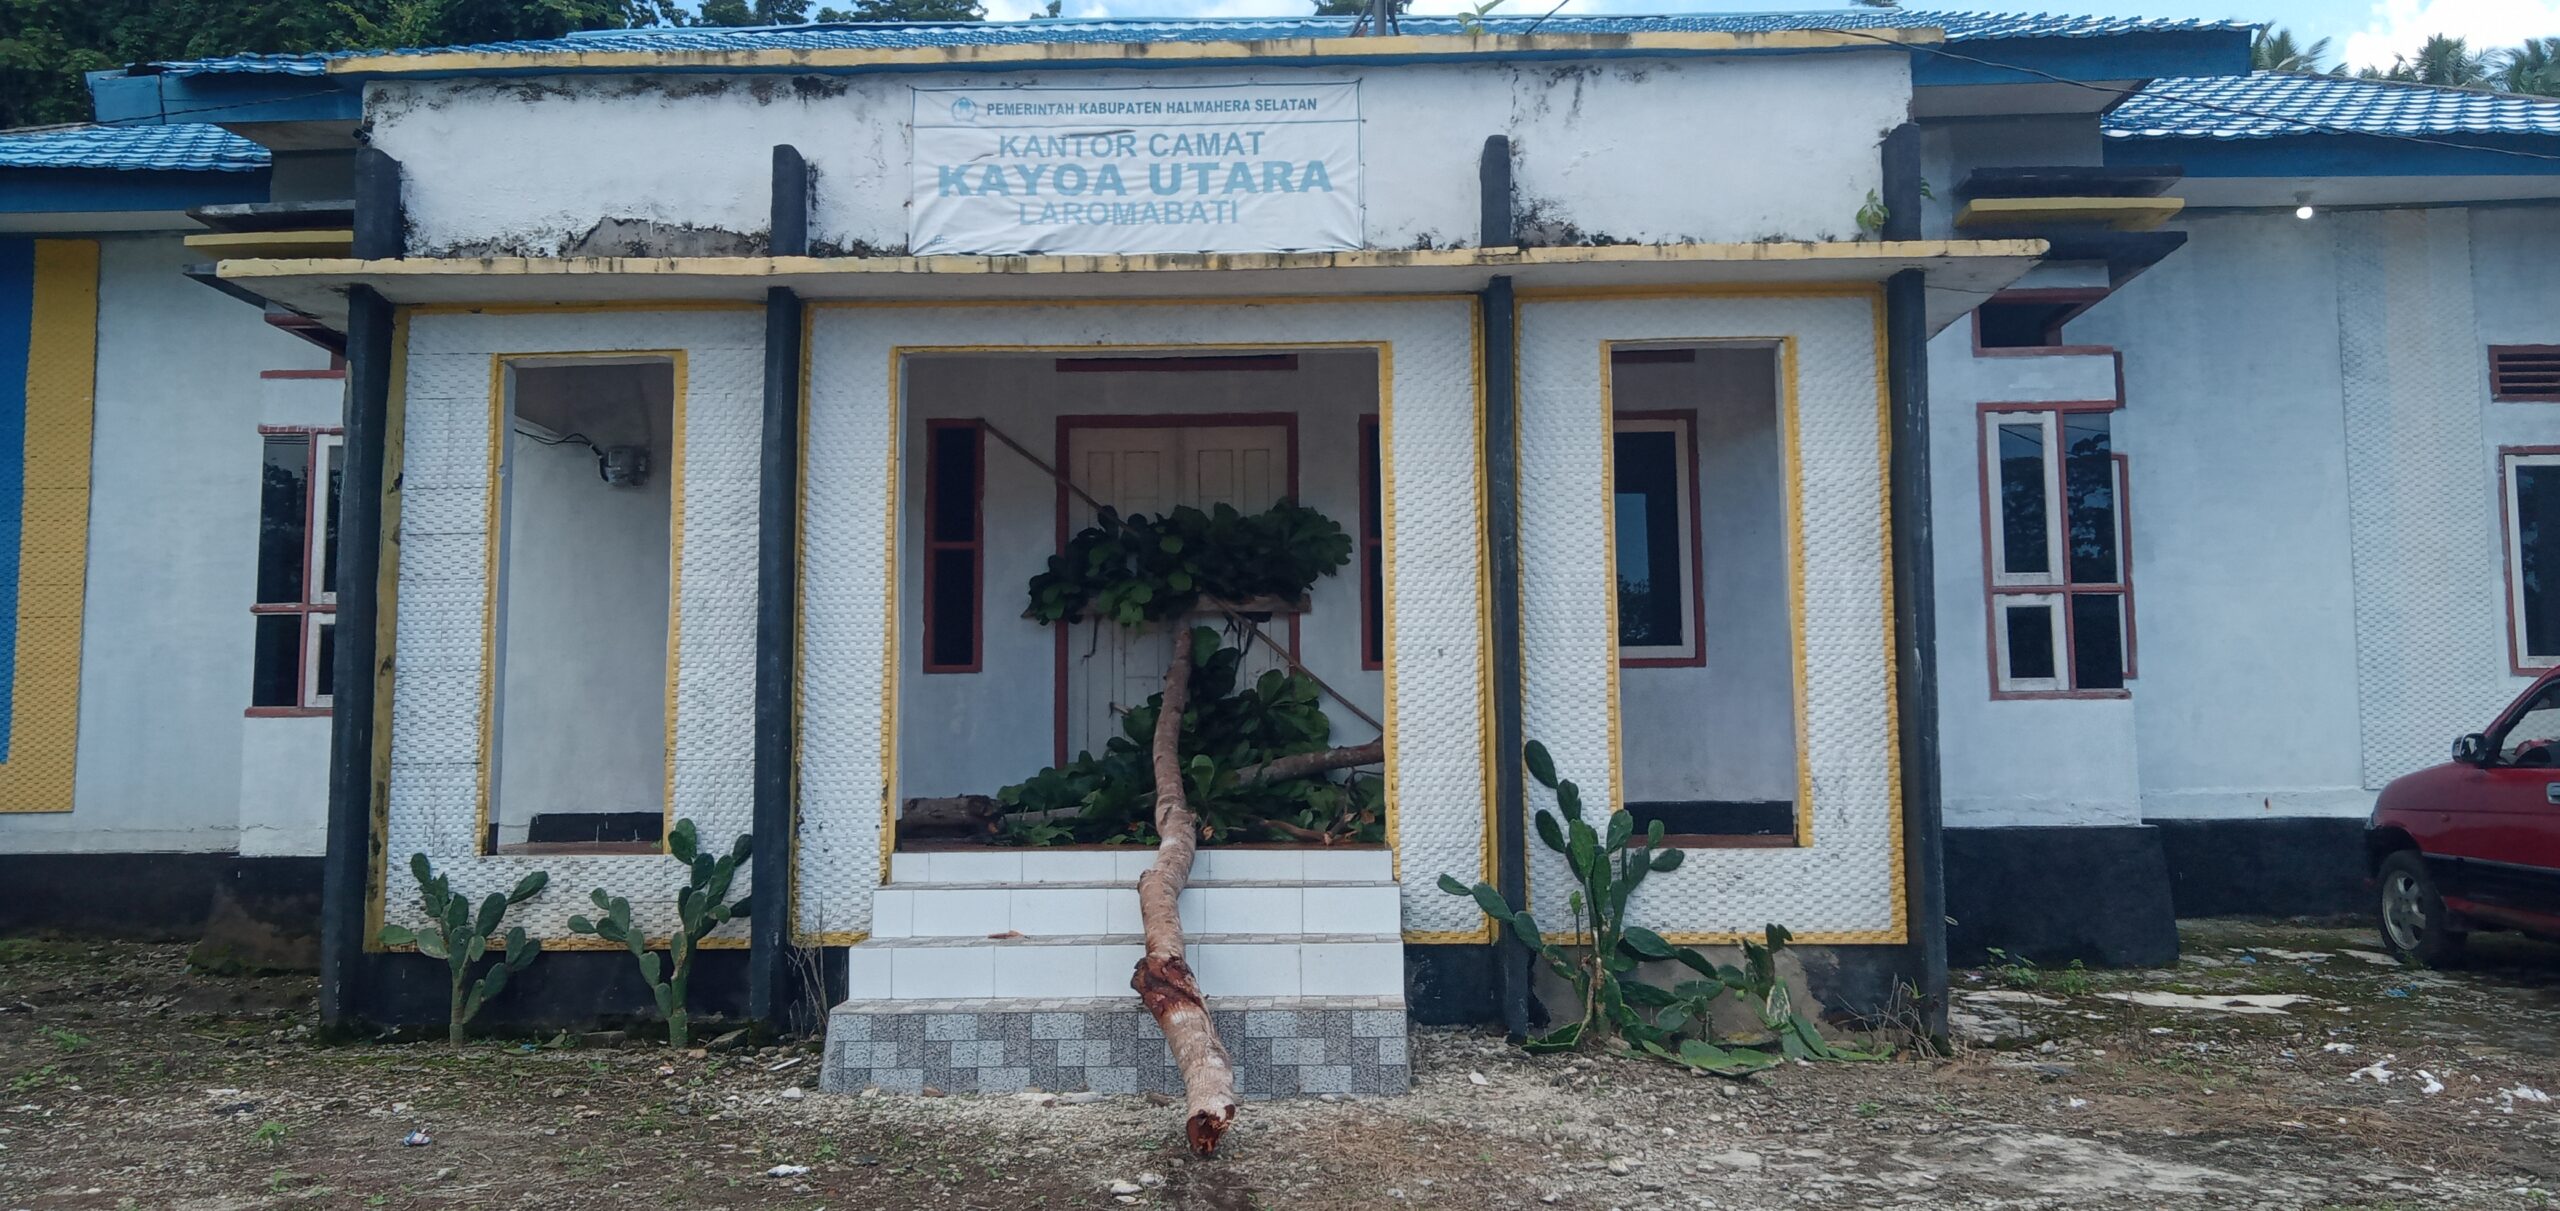 Kantor Camat Kayoa Utara, dipalang orang tidak dikenal.